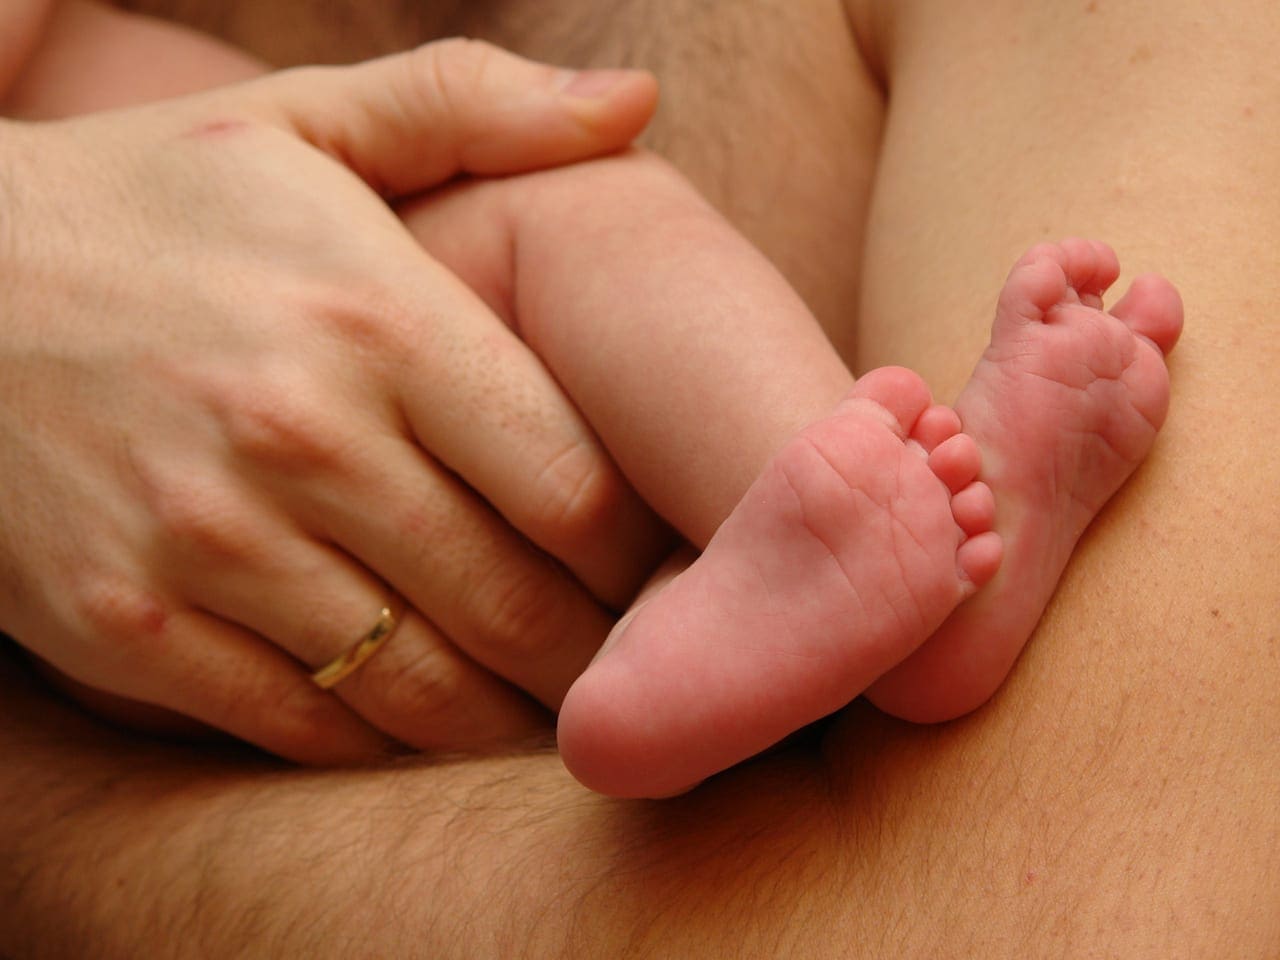 Pai poderá participar mais nos primeiros dias do filho em casa (Foto: Freepik)